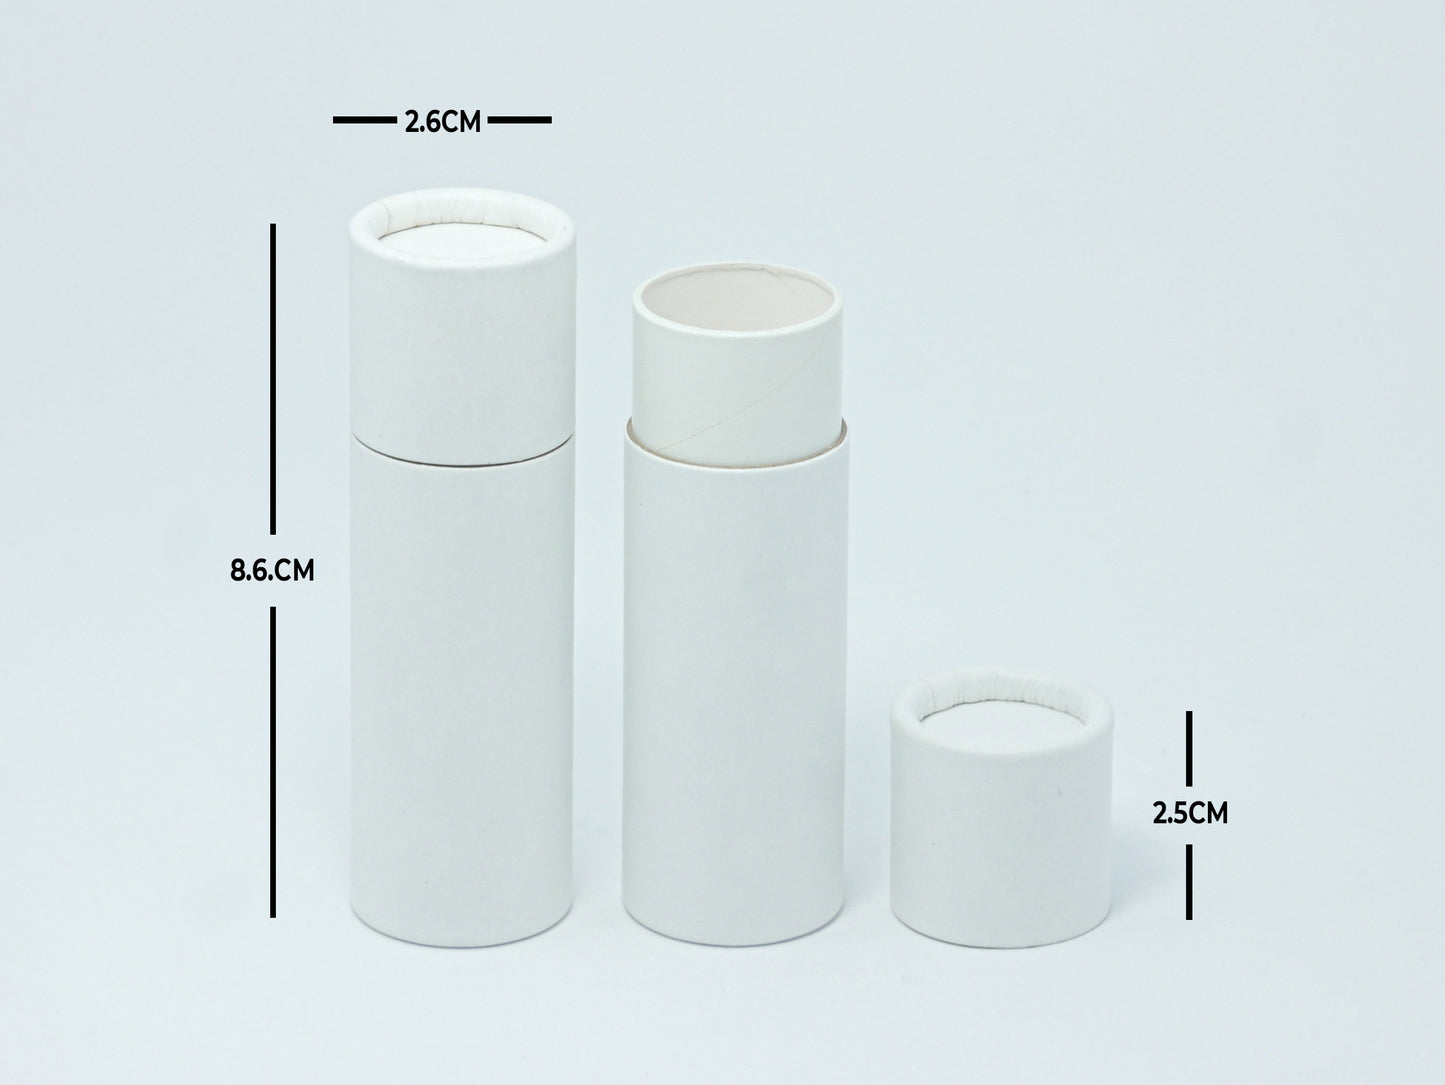 Desodorante/empaque push up biodegradable 30 gr. paquete de 100 piezas/ blanco(ENVÍO GRATIS)